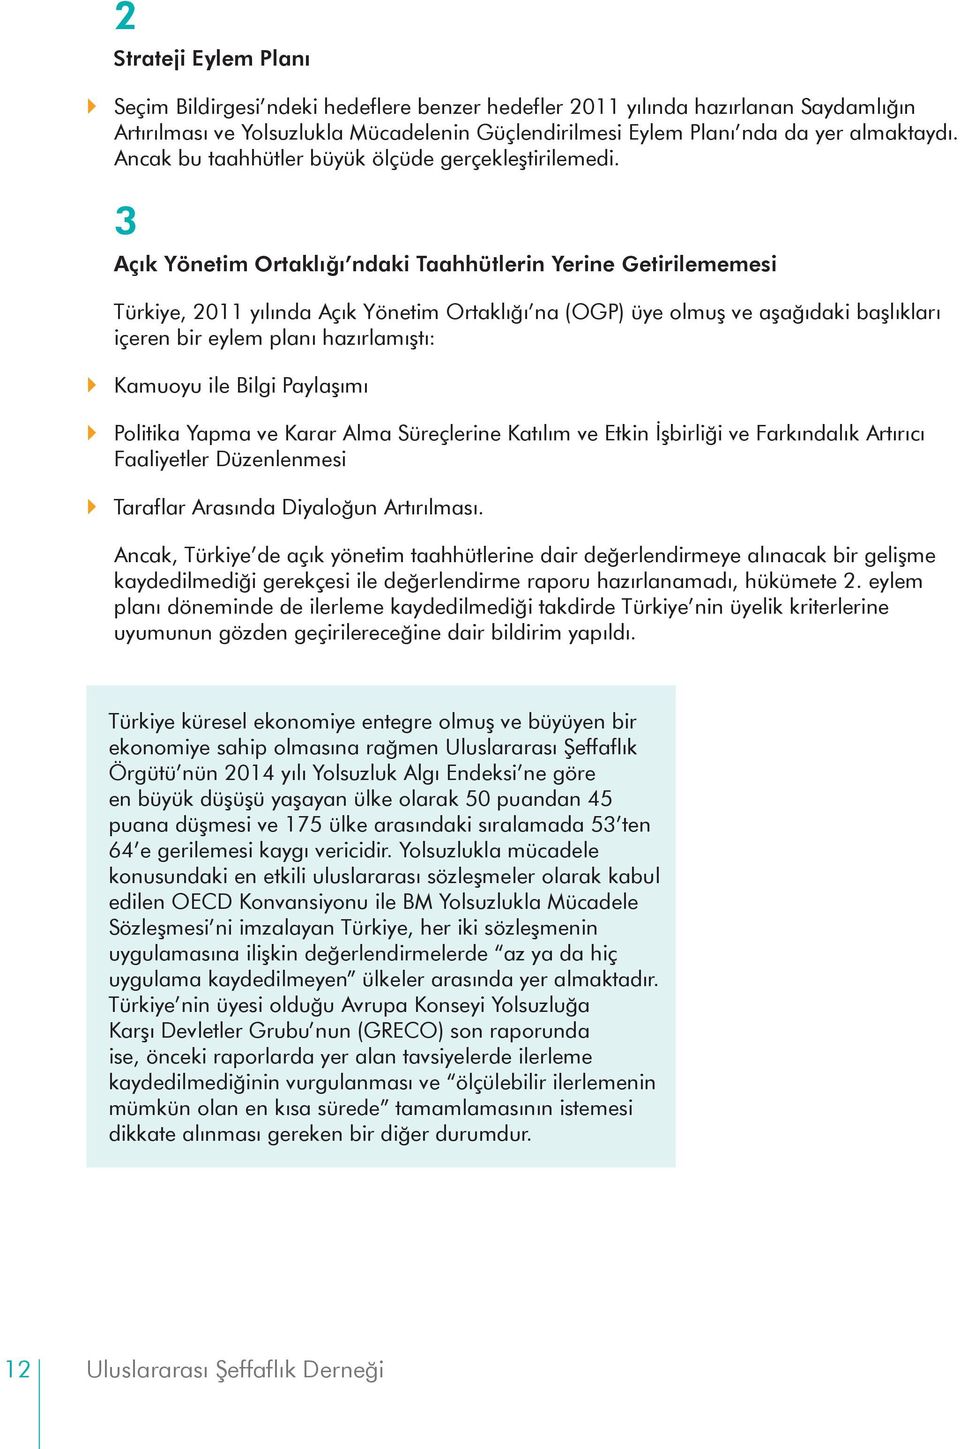 3 Açık Yönetim Ortaklığı ndaki Taahhütlerin Yerine Getirilememesi Türkiye, 2011 yılında Açık Yönetim Ortaklığı na (OGP) üye olmuş ve aşağıdaki başlıkları içeren bir eylem planı hazırlamıştı: Kamuoyu